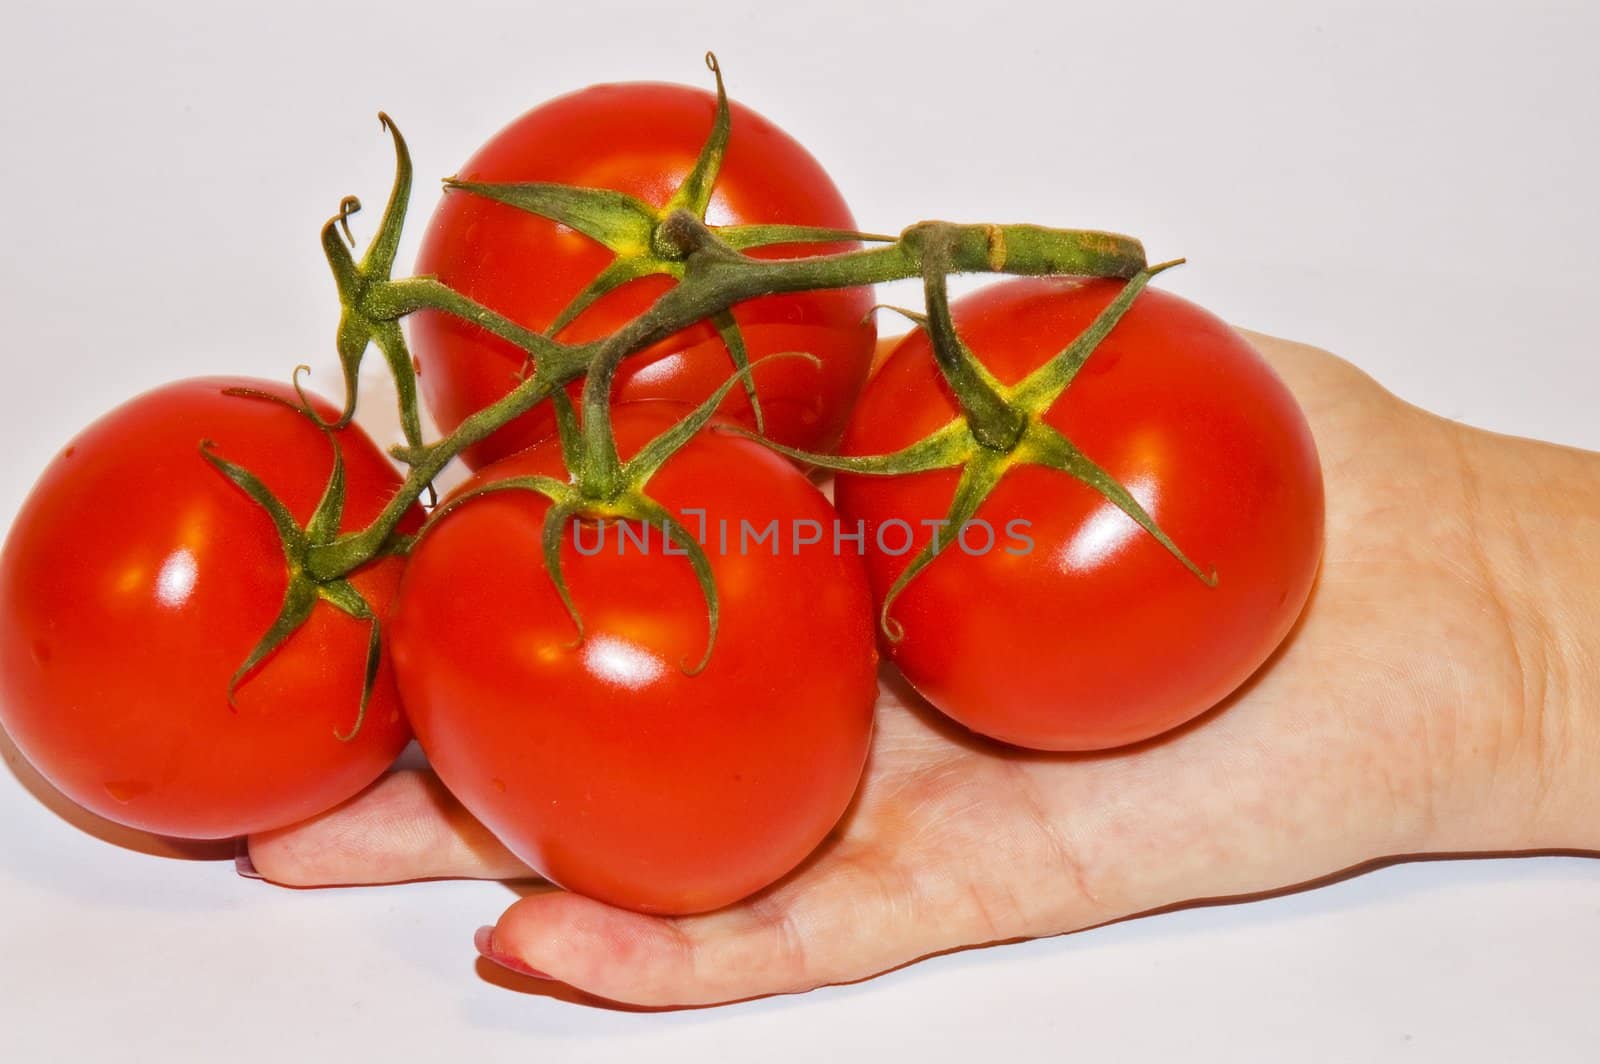 Tomato's on hand